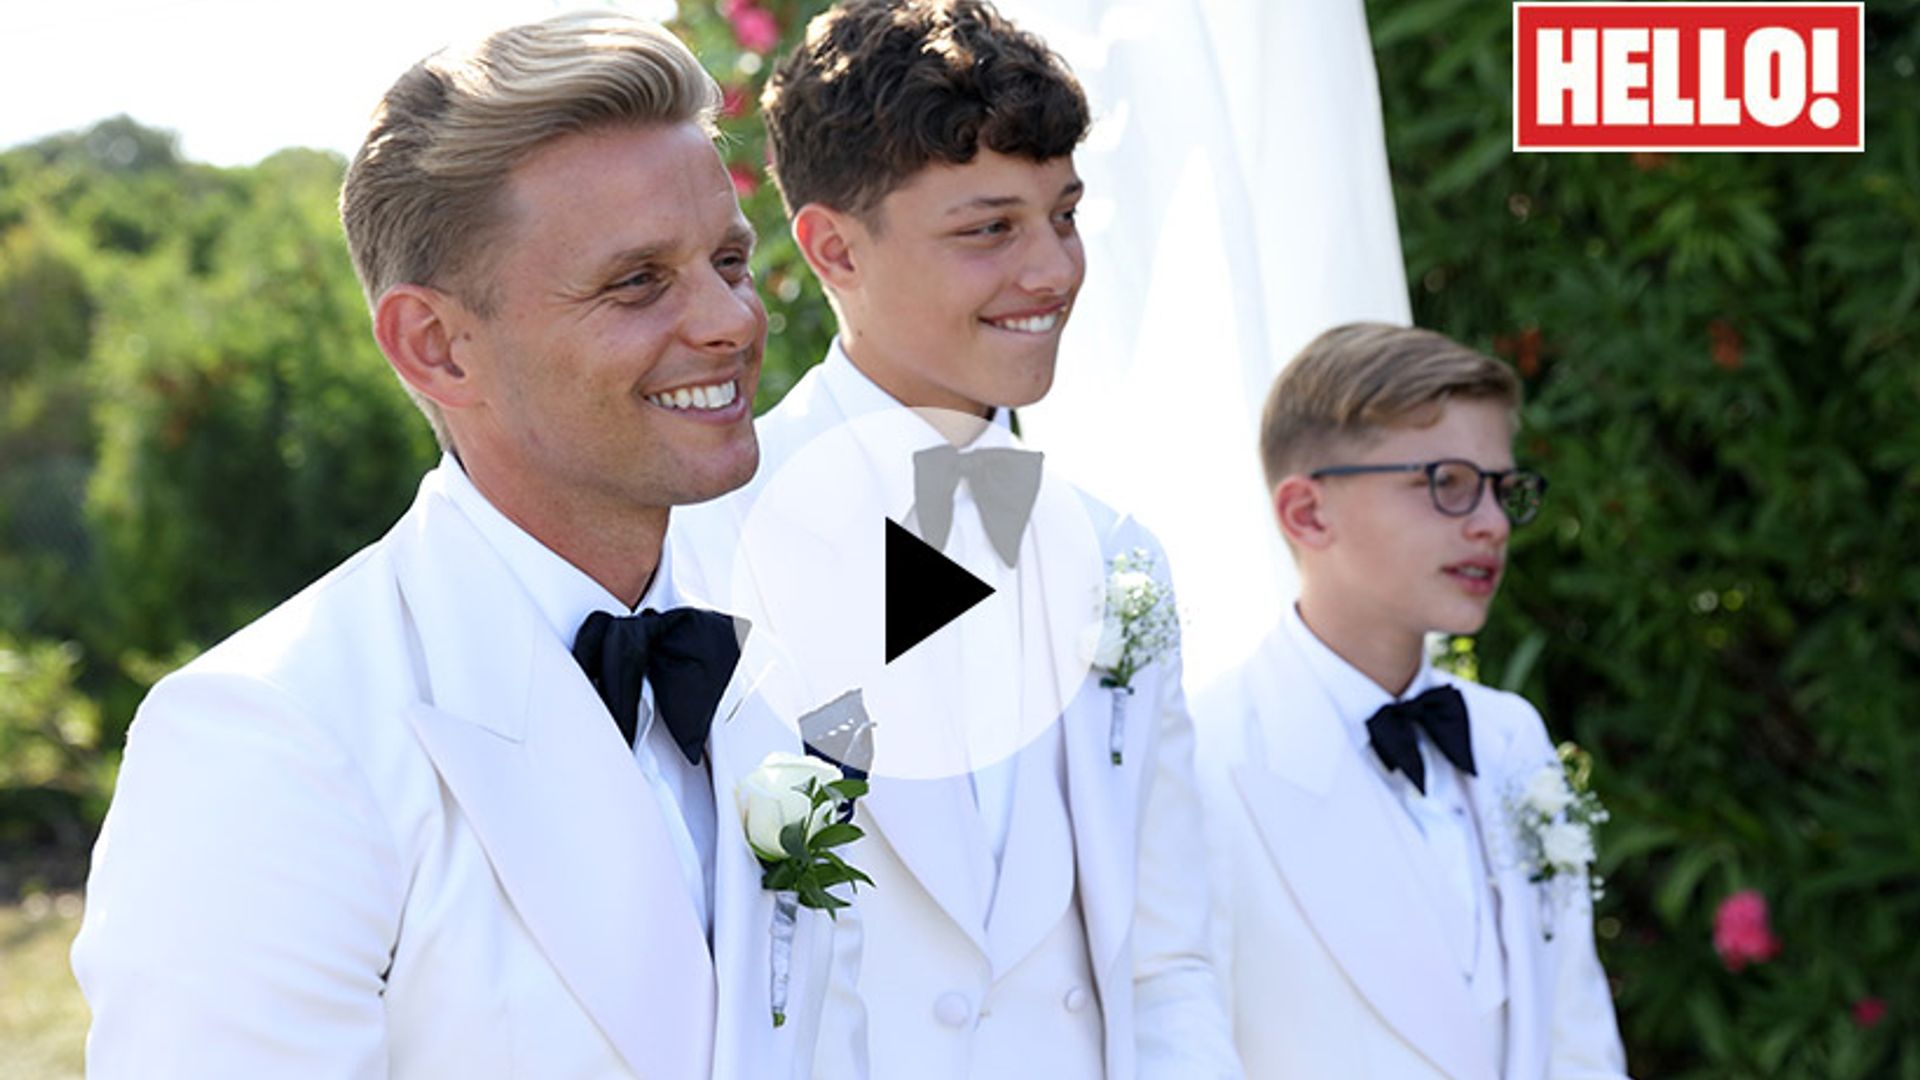 jeff-brazier-wedding-video